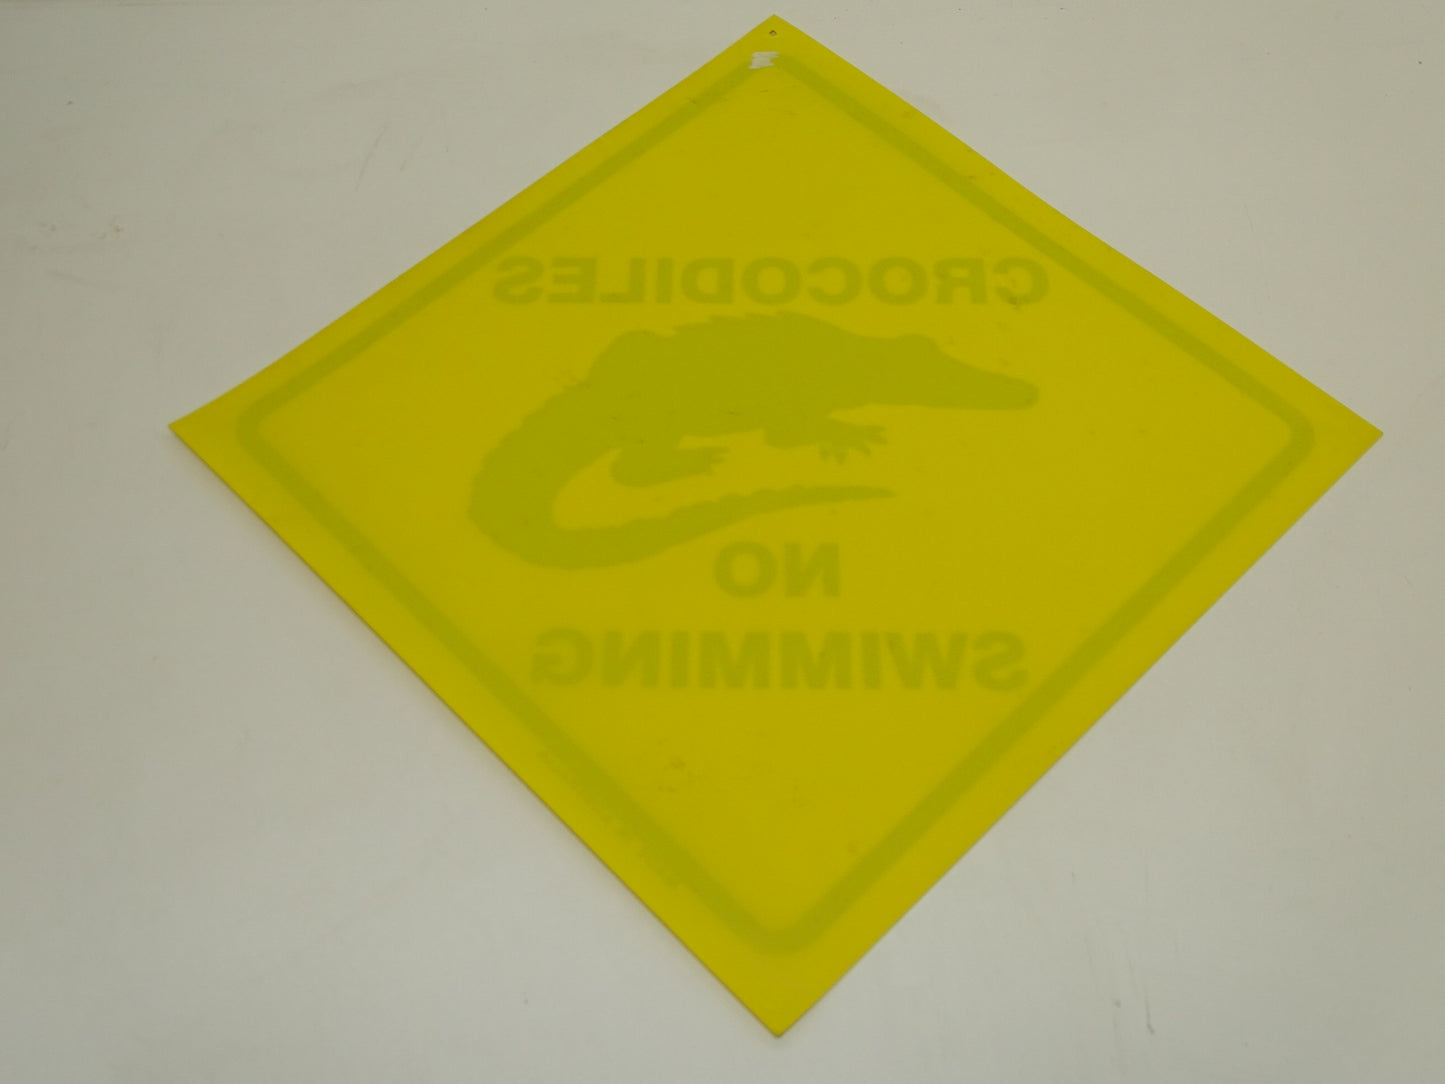 Bord: Crocodiles No Swimming, Australia